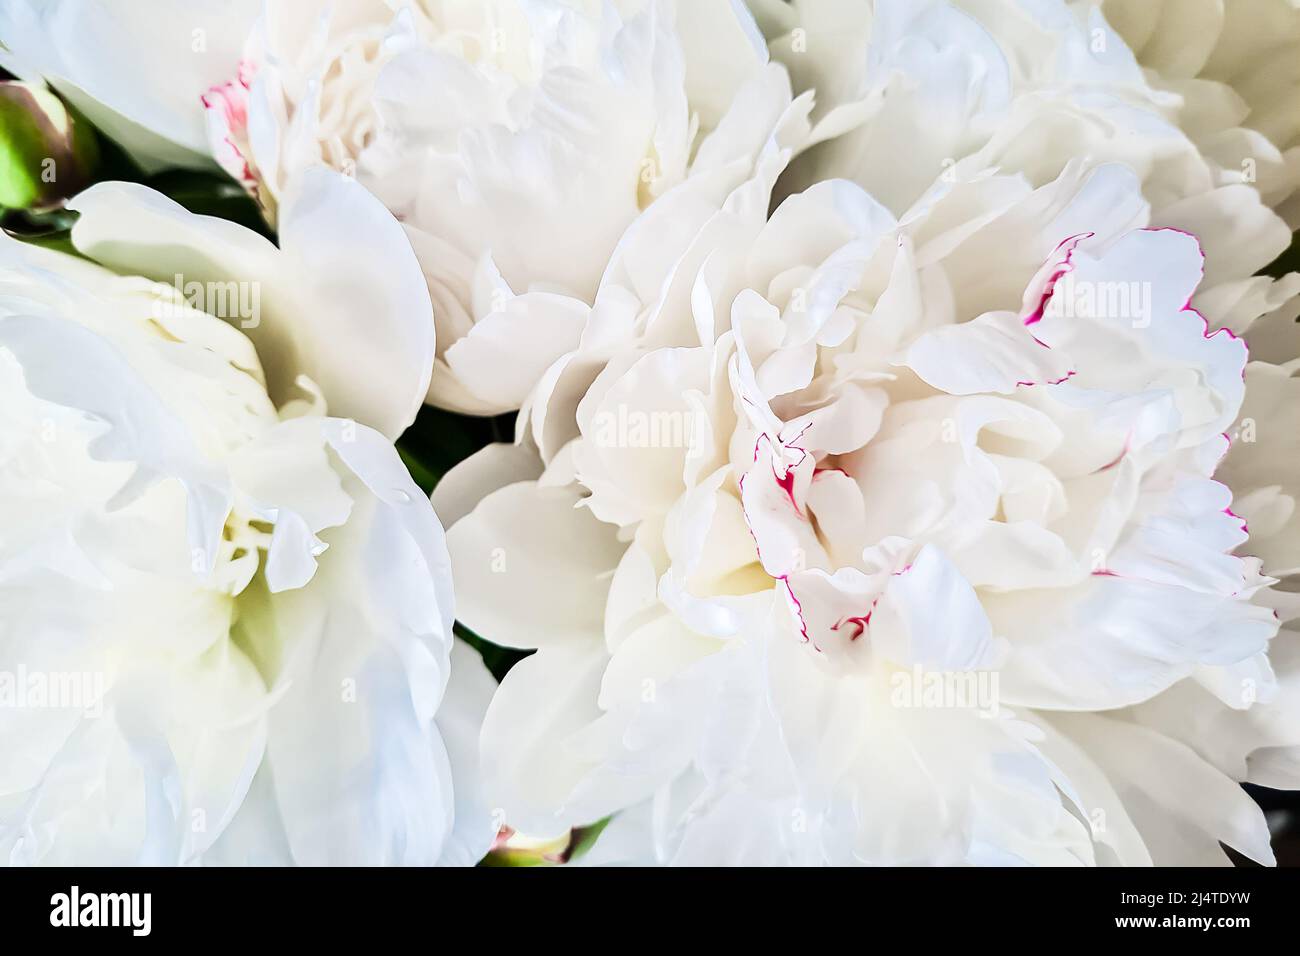 Flor blanca de peonías de cerca. Delicados pétalos de flores frágiles. Símbolo de pureza y ternura. Fondo natural. Foto de stock